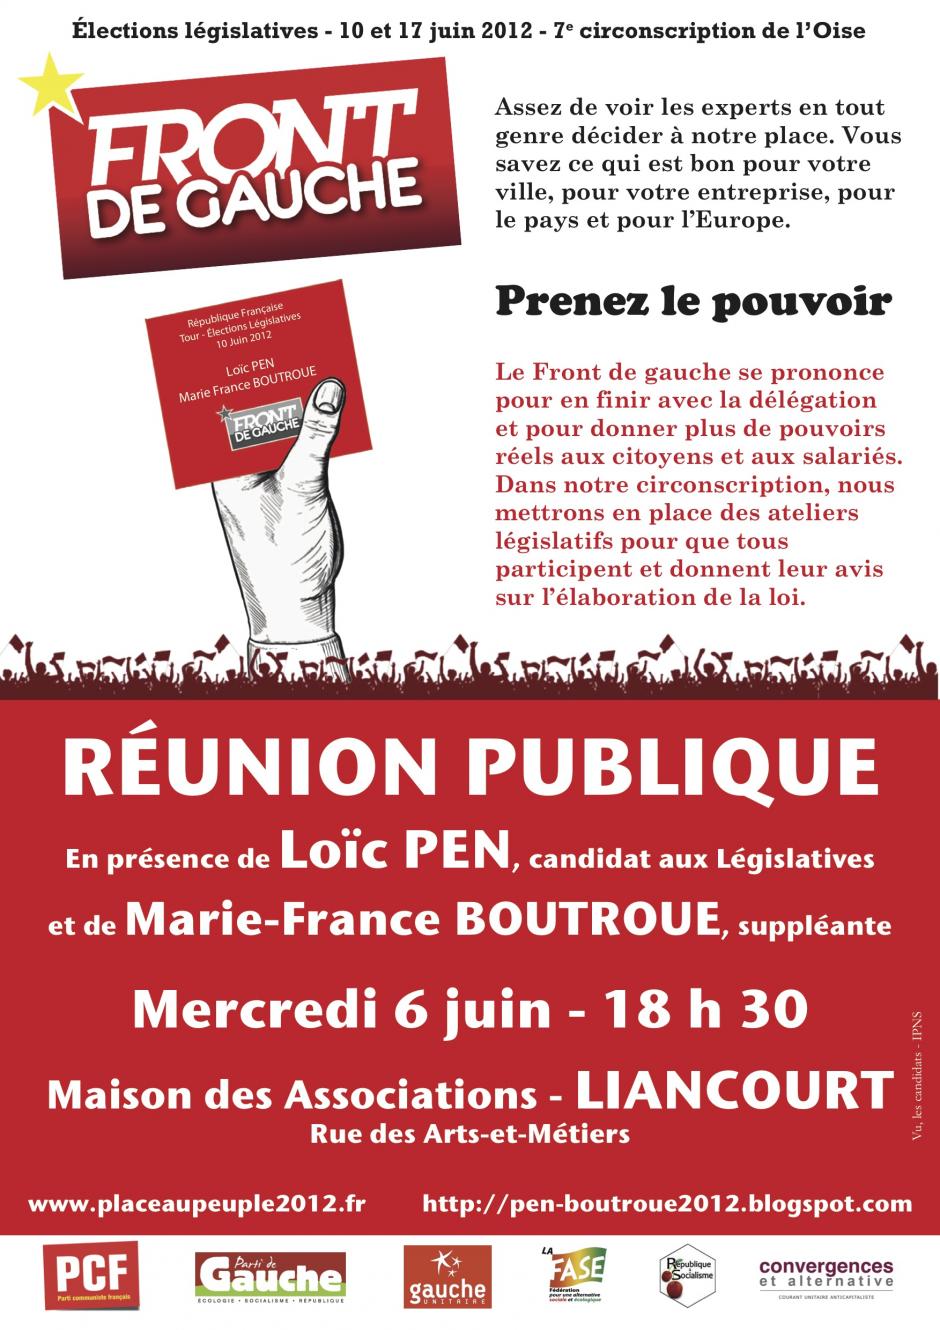 6 juin, Liancourt - Réunion publique du Front de gauche